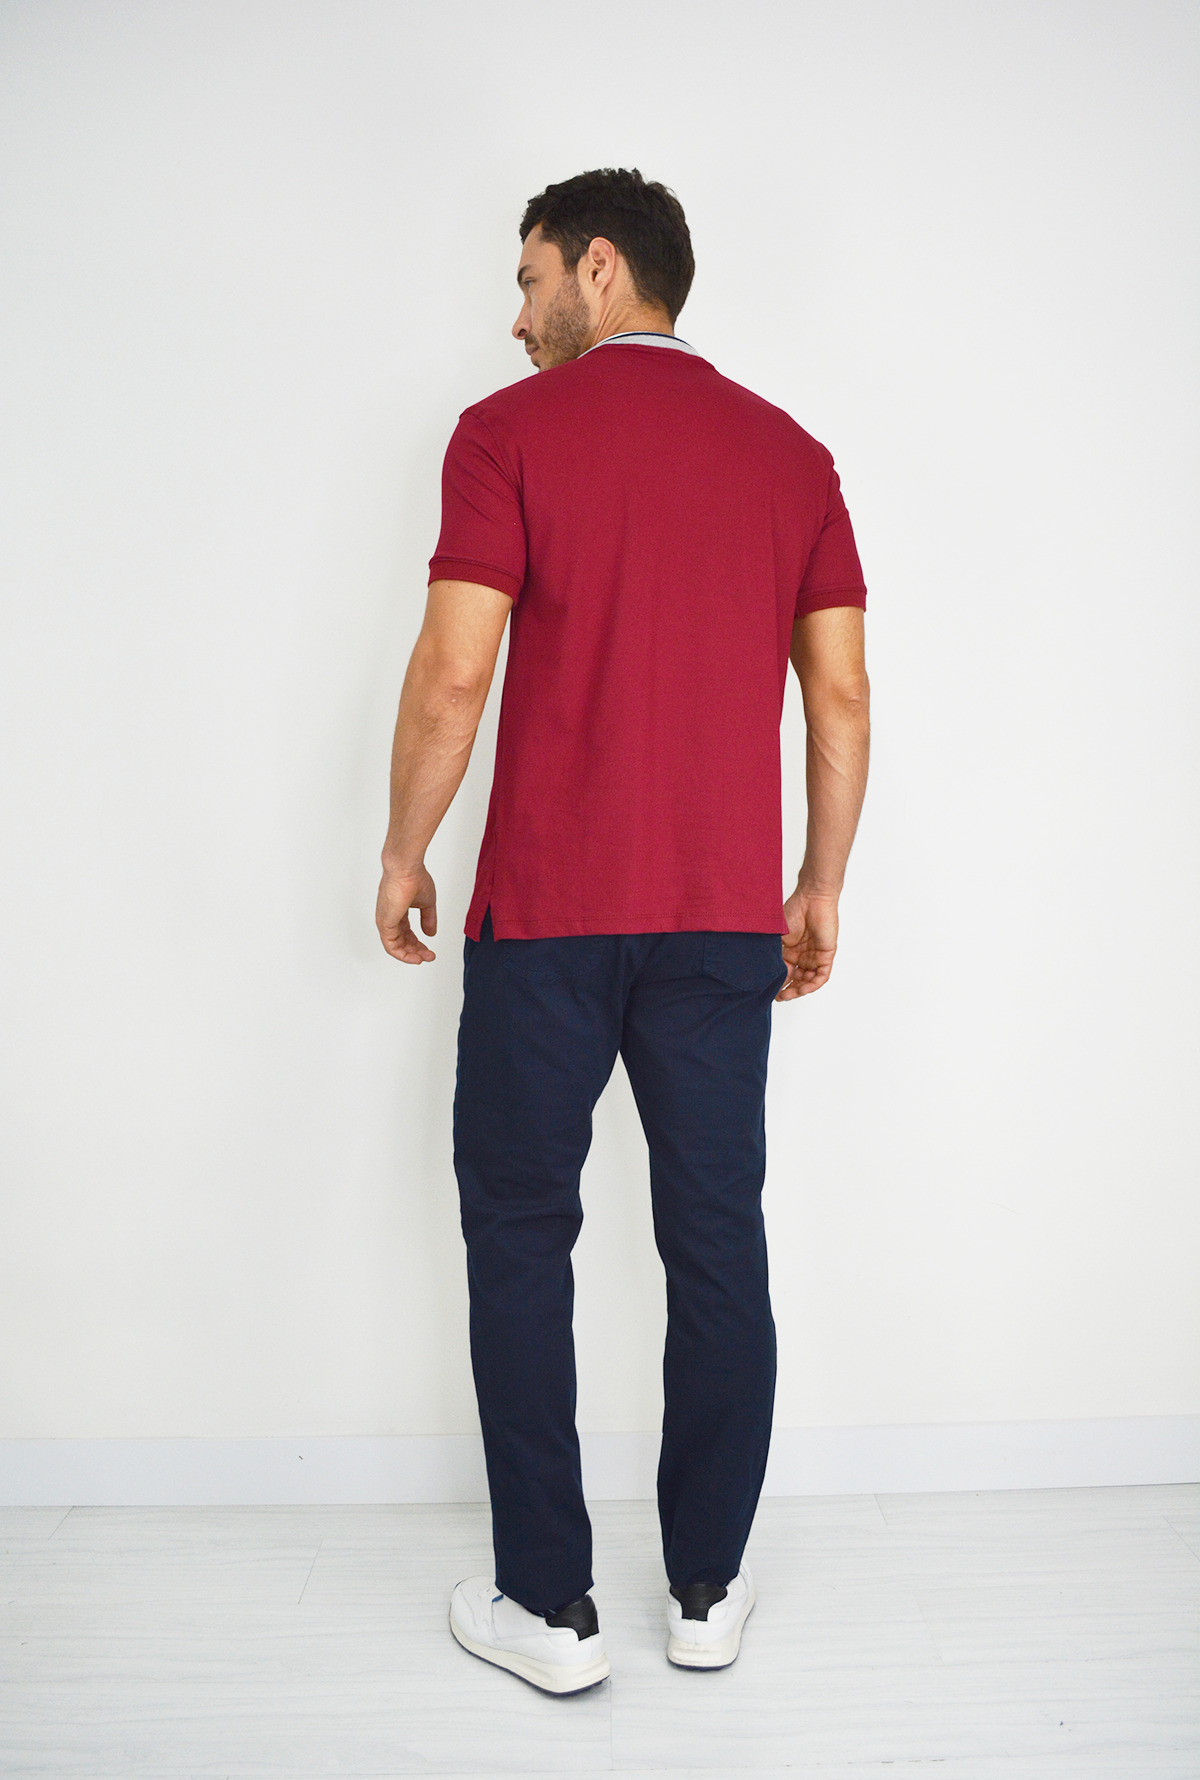 Camiseta Tipo Polo Roja Para Hombre  DMM09-017